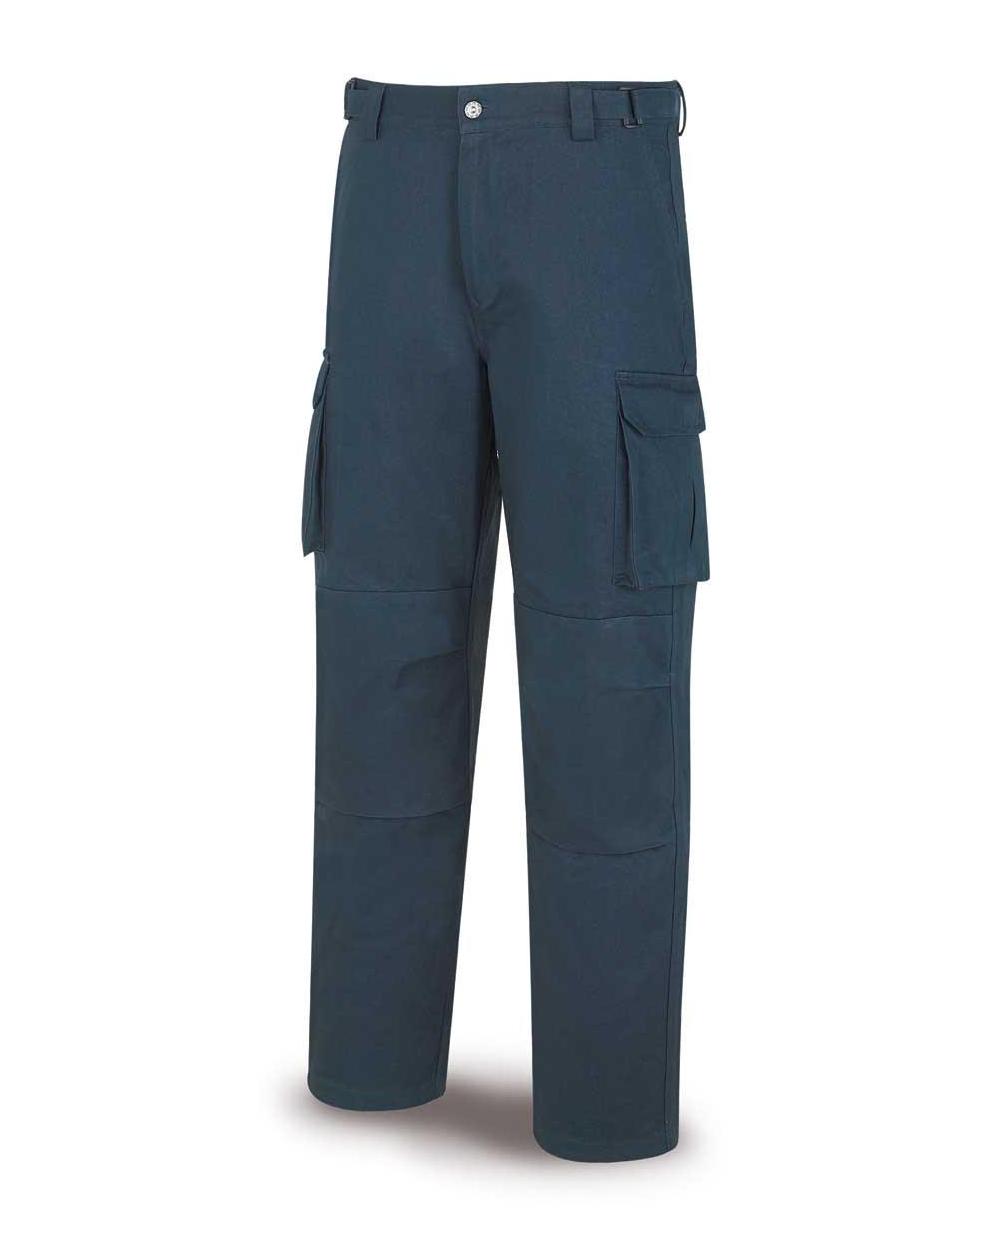 Comprar Pantalón Especialista Azul 588-Pea